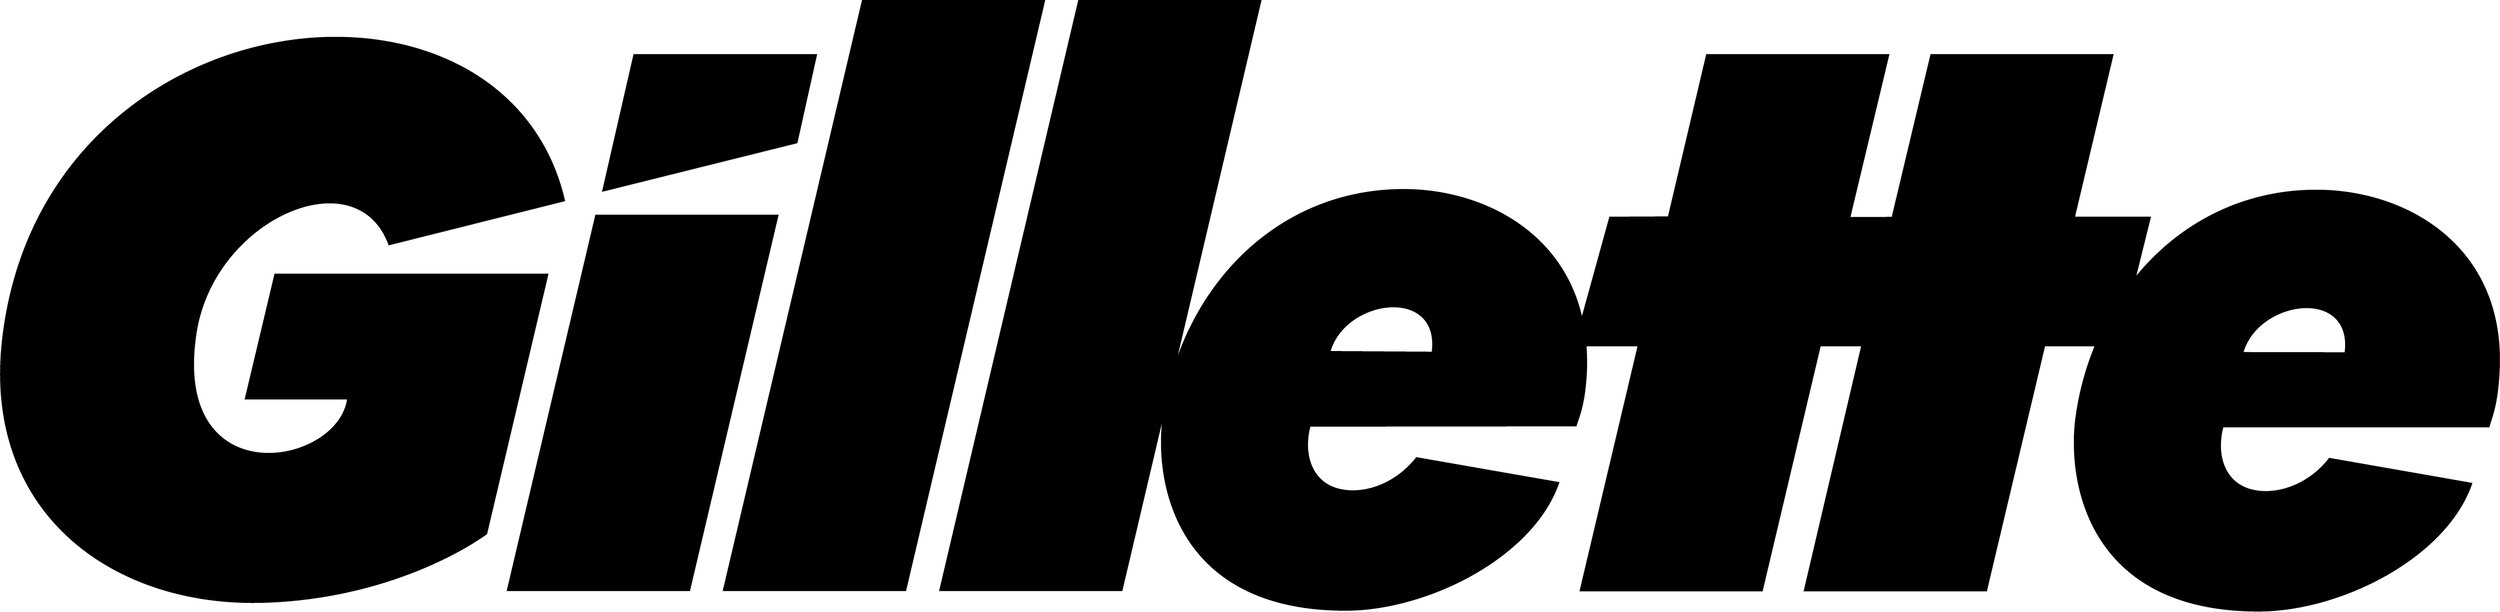 Logo_Gillette_Black.jpg